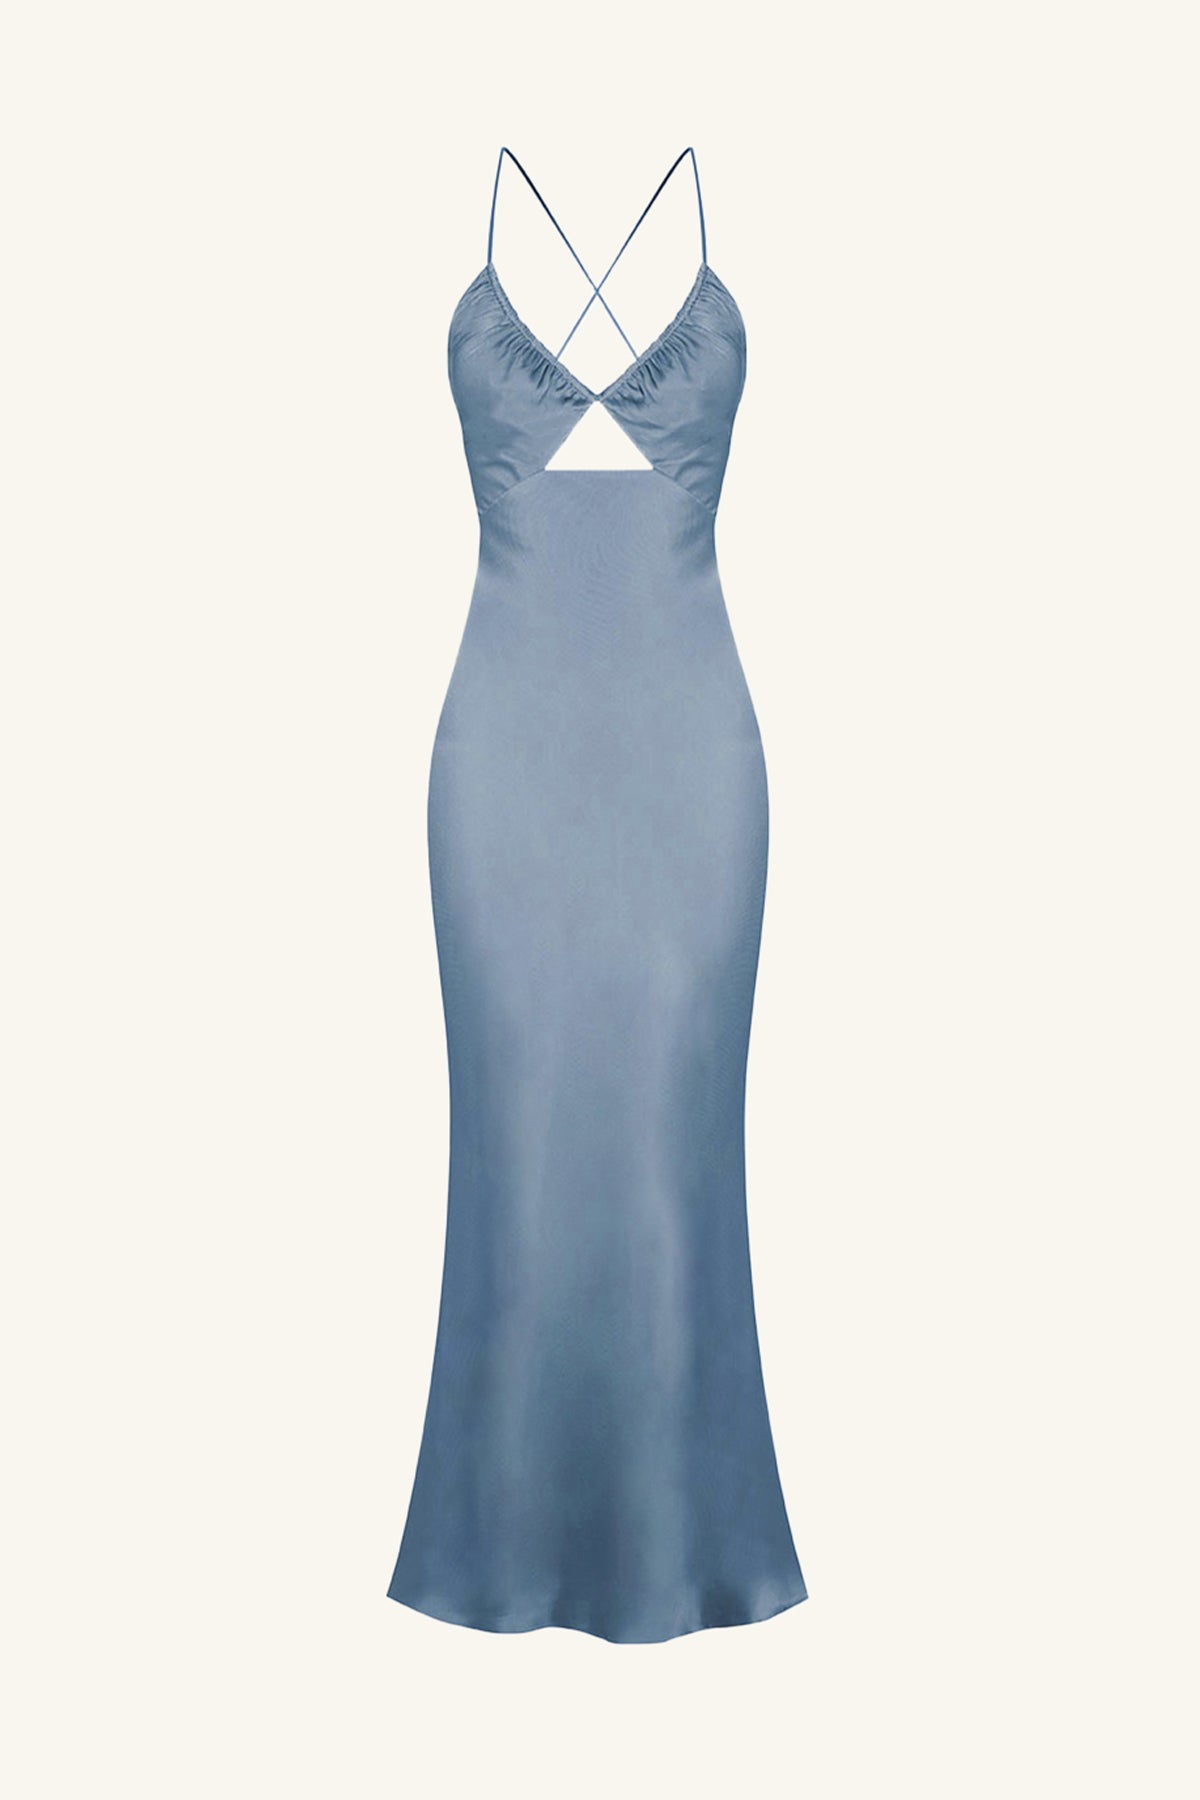 Shona Joy La Lune Ruched Bodice Maxi Dress